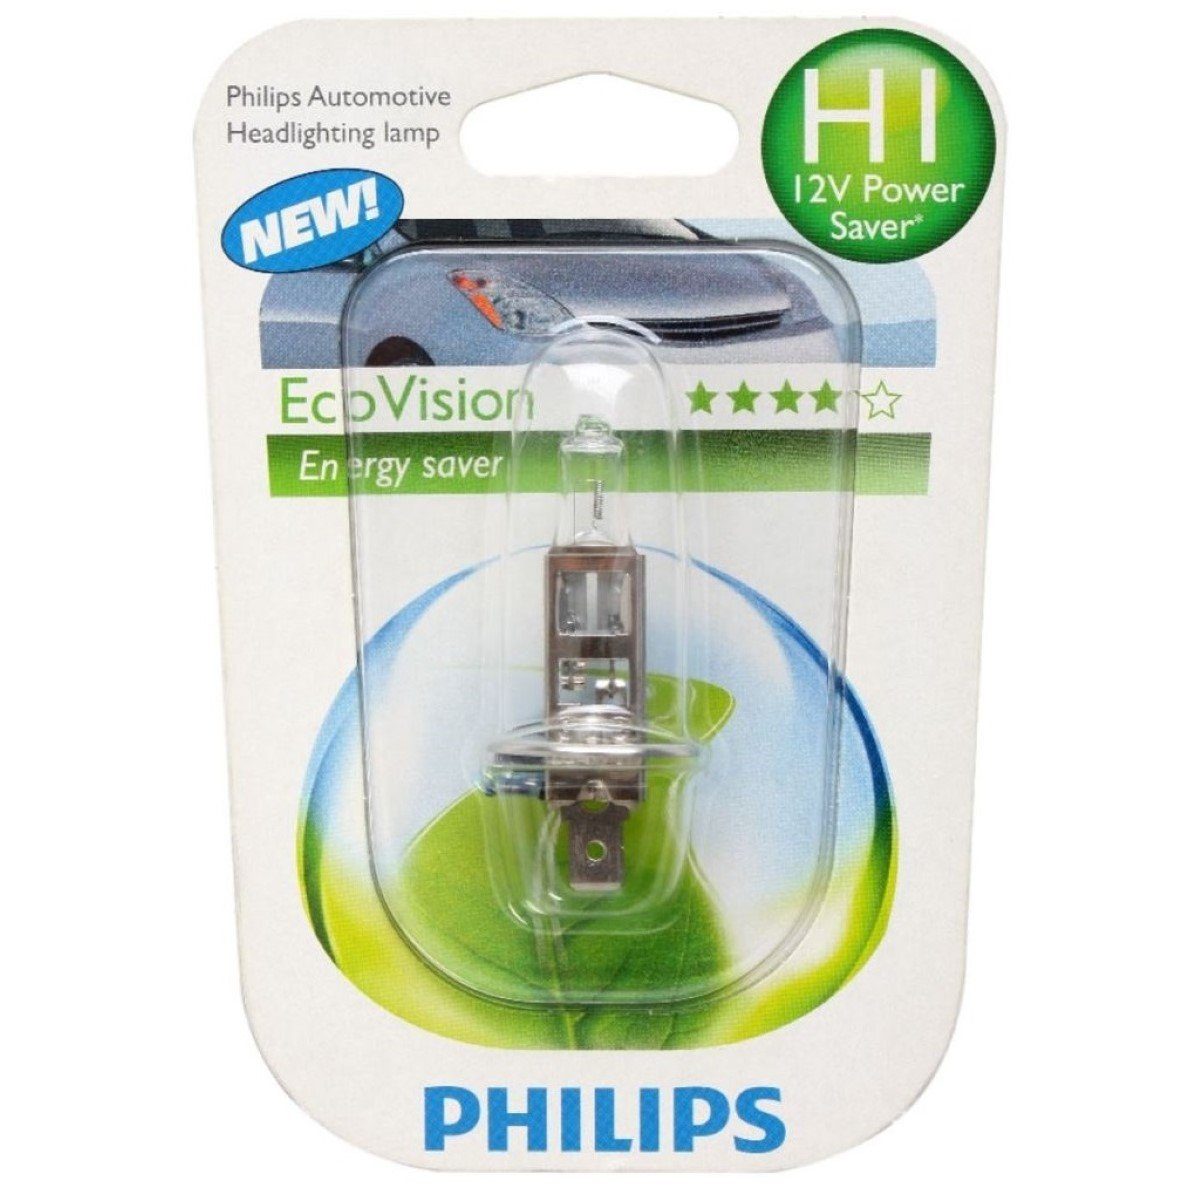 Philips KFZ-Ersatzleuchte H1 Eco-Vision 12V Energysaver St., 55W Sockel 12V P14,5s Auto-Birne 1 Scheinwerfer-Lampe Weiß, Halogen-Birnen mit H1 H1, Auto-Lampe